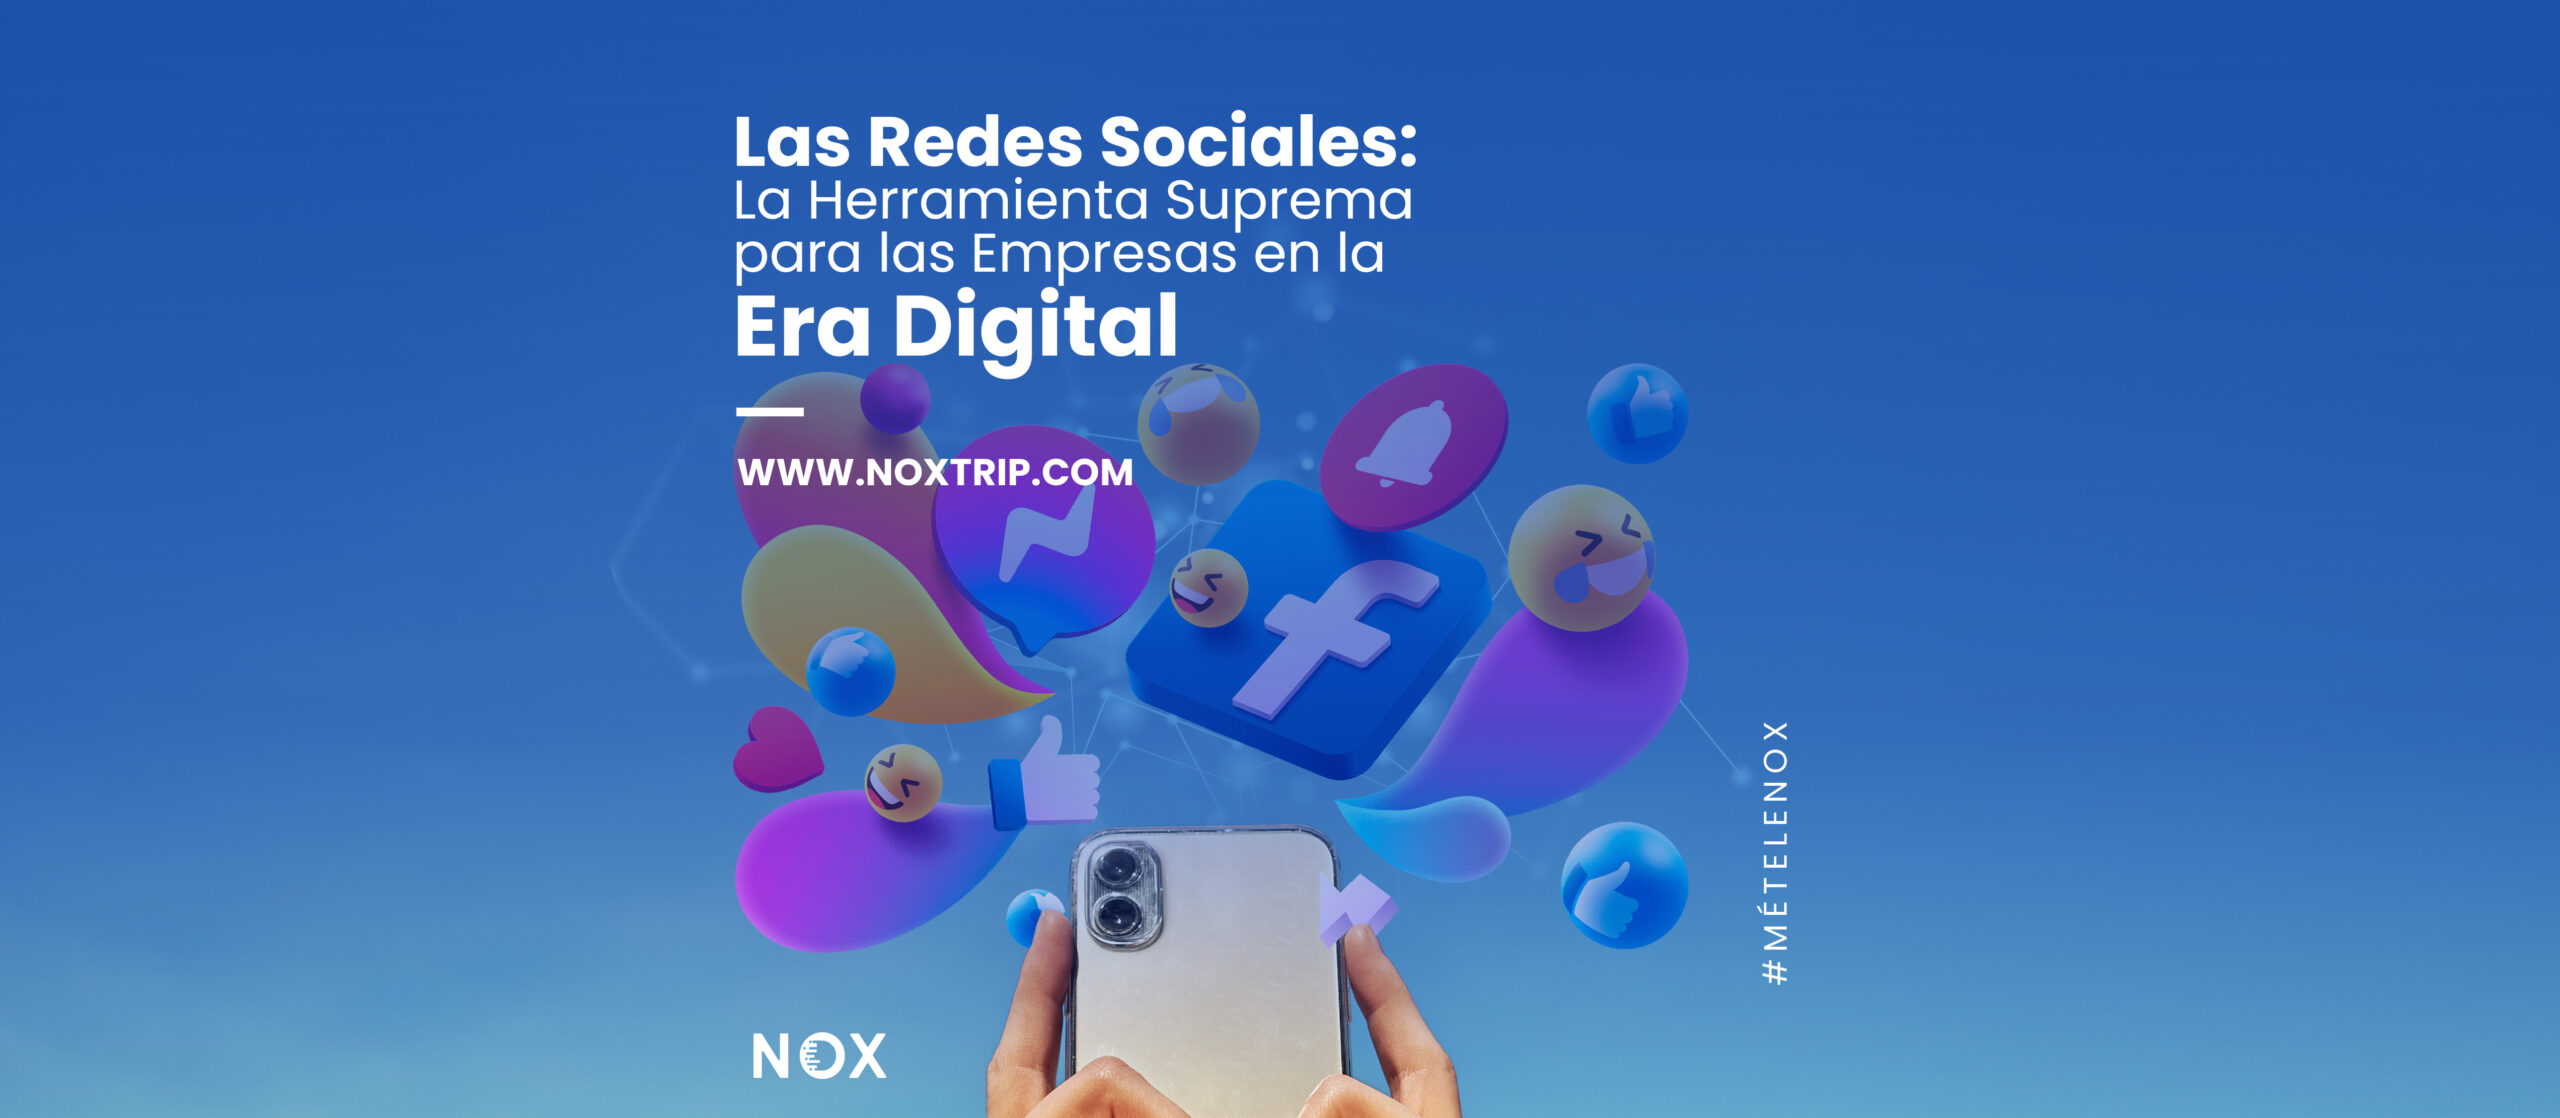 Nox marketing digital - Las Redes Sociales La Herramienta Suprema para las Empresas